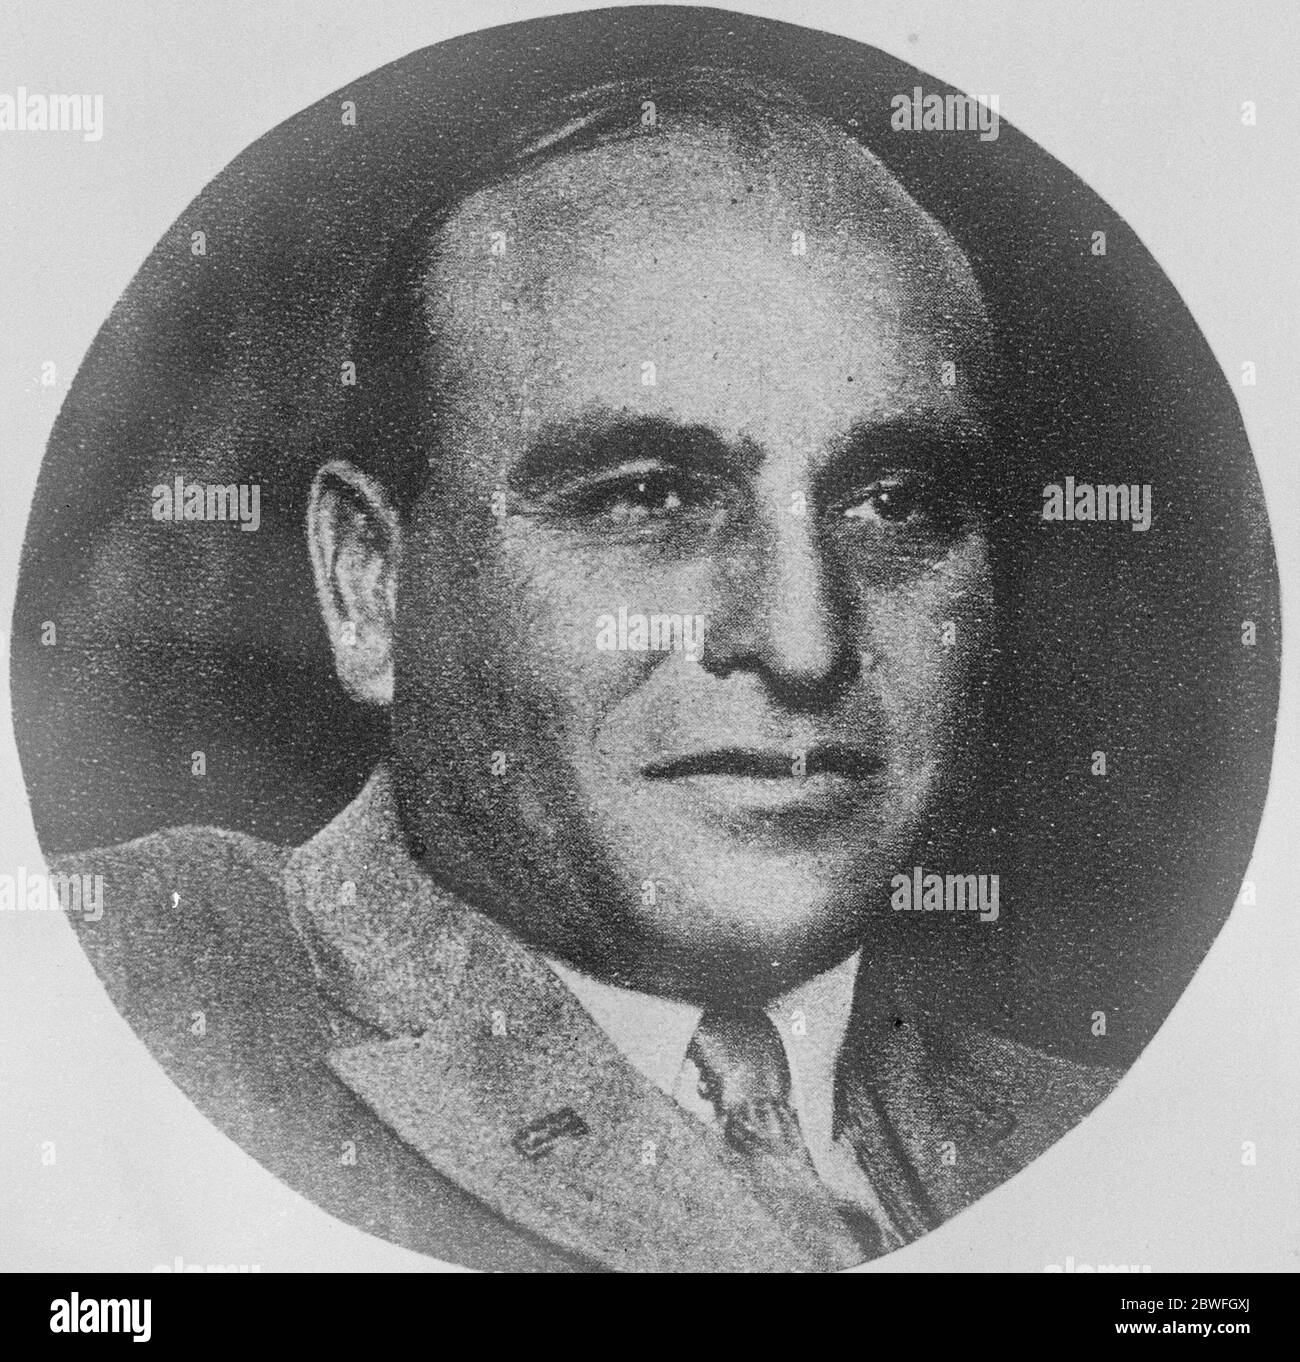 Begnadigt Sträfling machen gute Louis Victor Eytinge, die nach dem Dienst 16 Jahre für Mord wurde befreit und arbeitet jetzt in New York zu einem großen Gehalt . 17 Februar 1923 Stockfoto